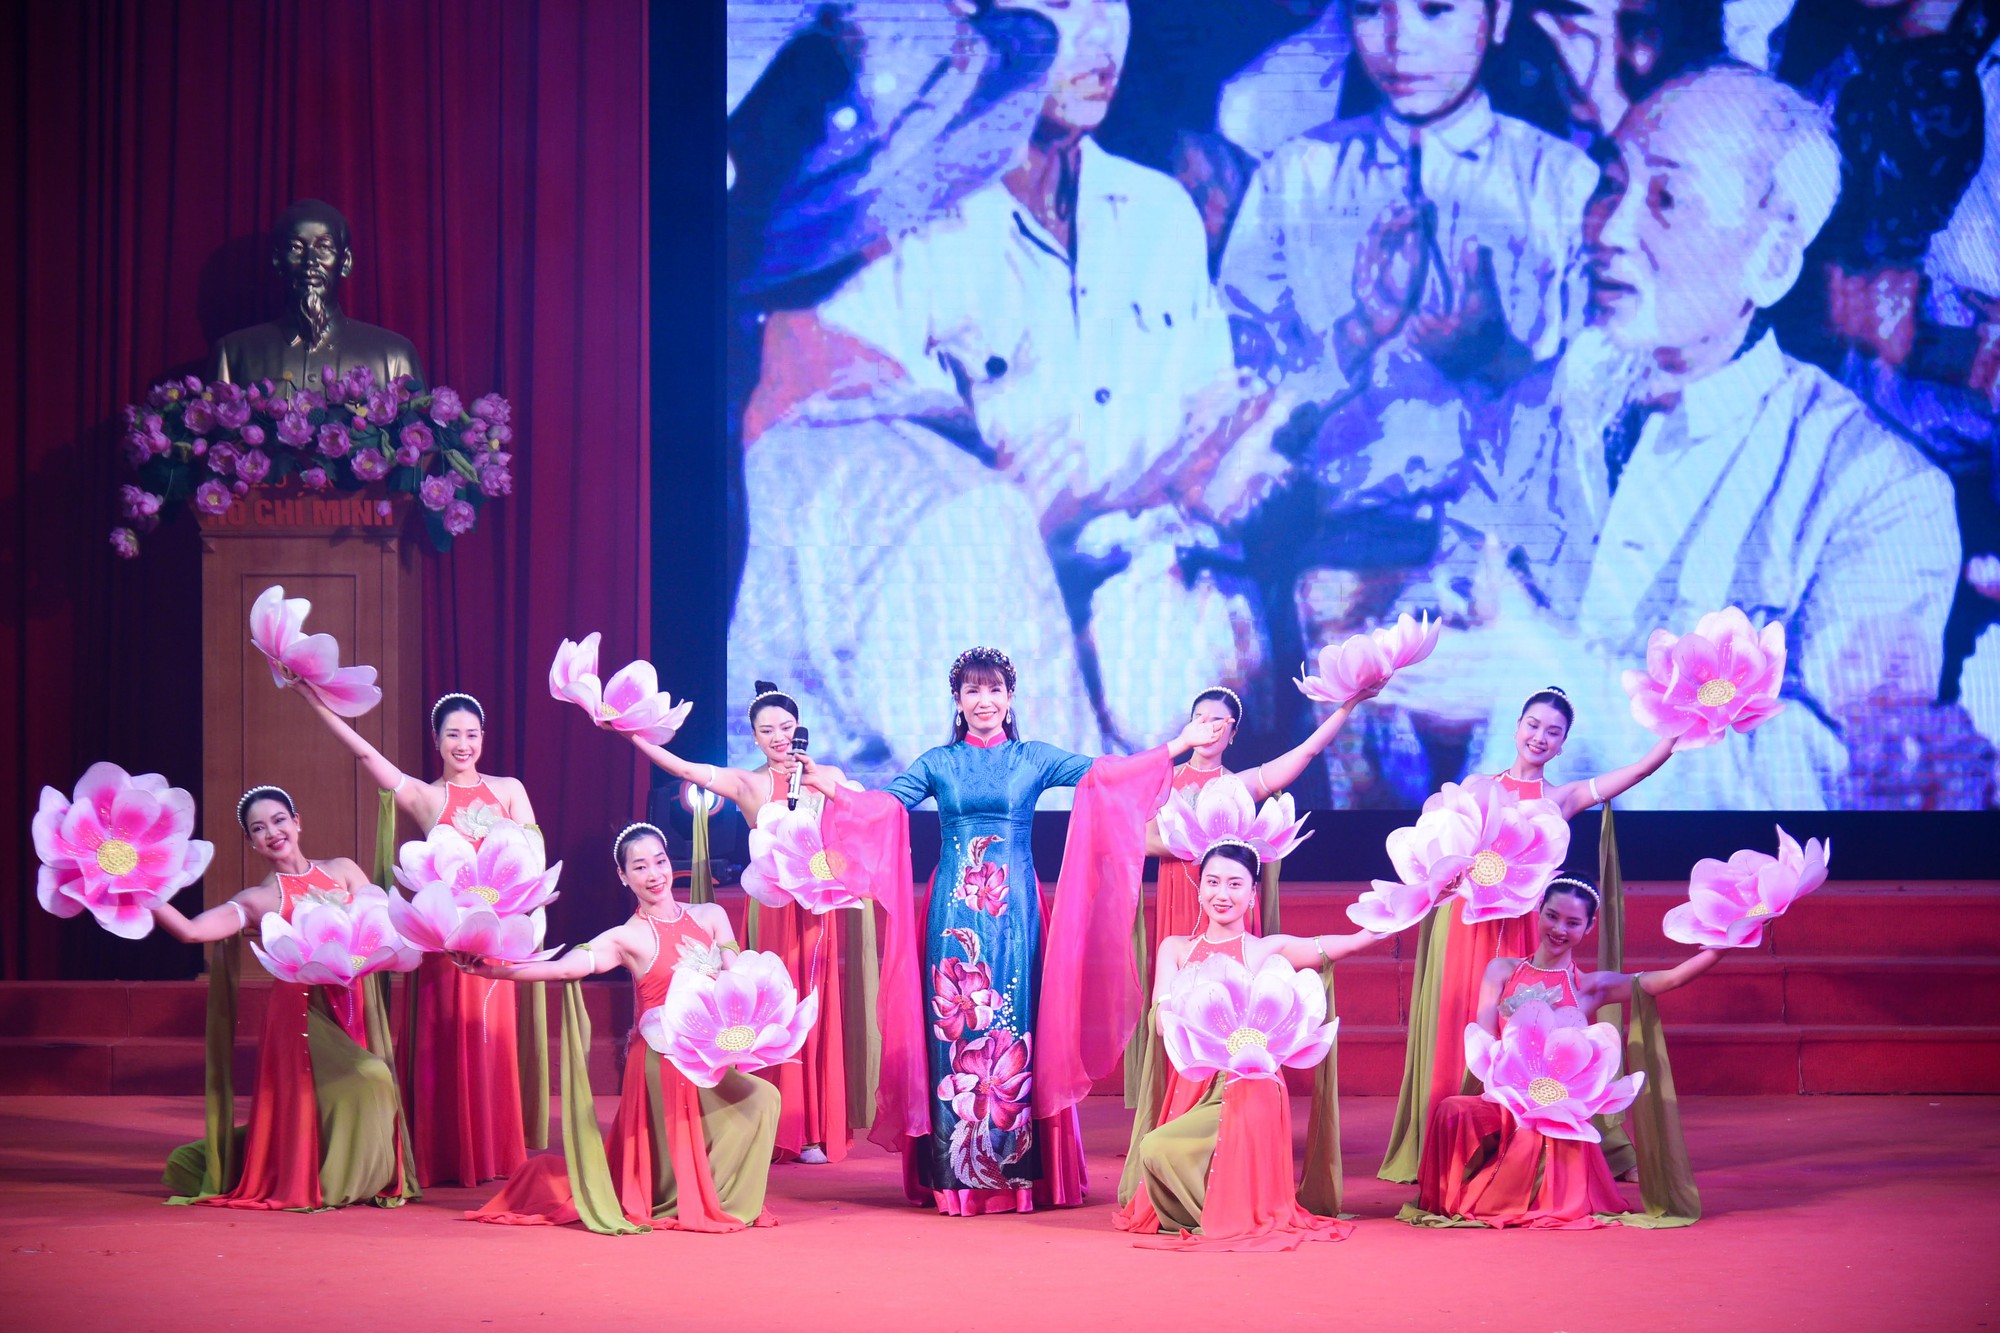 Hội Nông dân Hà Nội tổ chức Lễ mít tinh chào mừng thành công Đại hội đại biểu toàn quốc Hội NDVN lần thứ VIII - Ảnh 1.